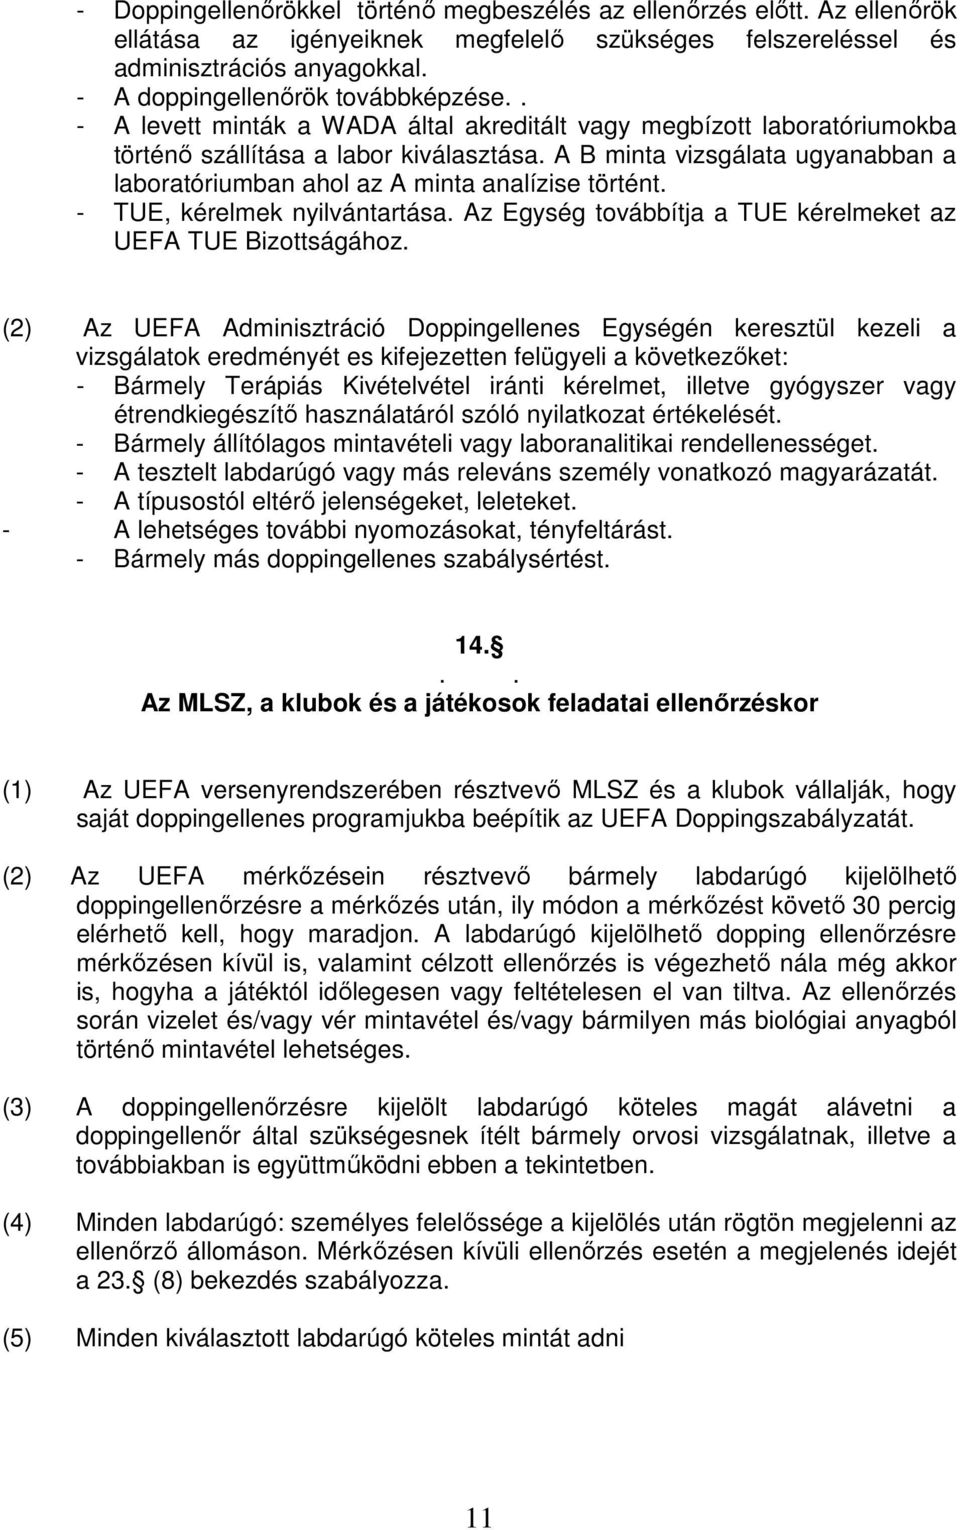 A B minta vizsgálata ugyanabban a laboratóriumban ahol az A minta analízise történt. - TUE, kérelmek nyilvántartása. Az Egység továbbítja a TUE kérelmeket az UEFA TUE Bizottságához.